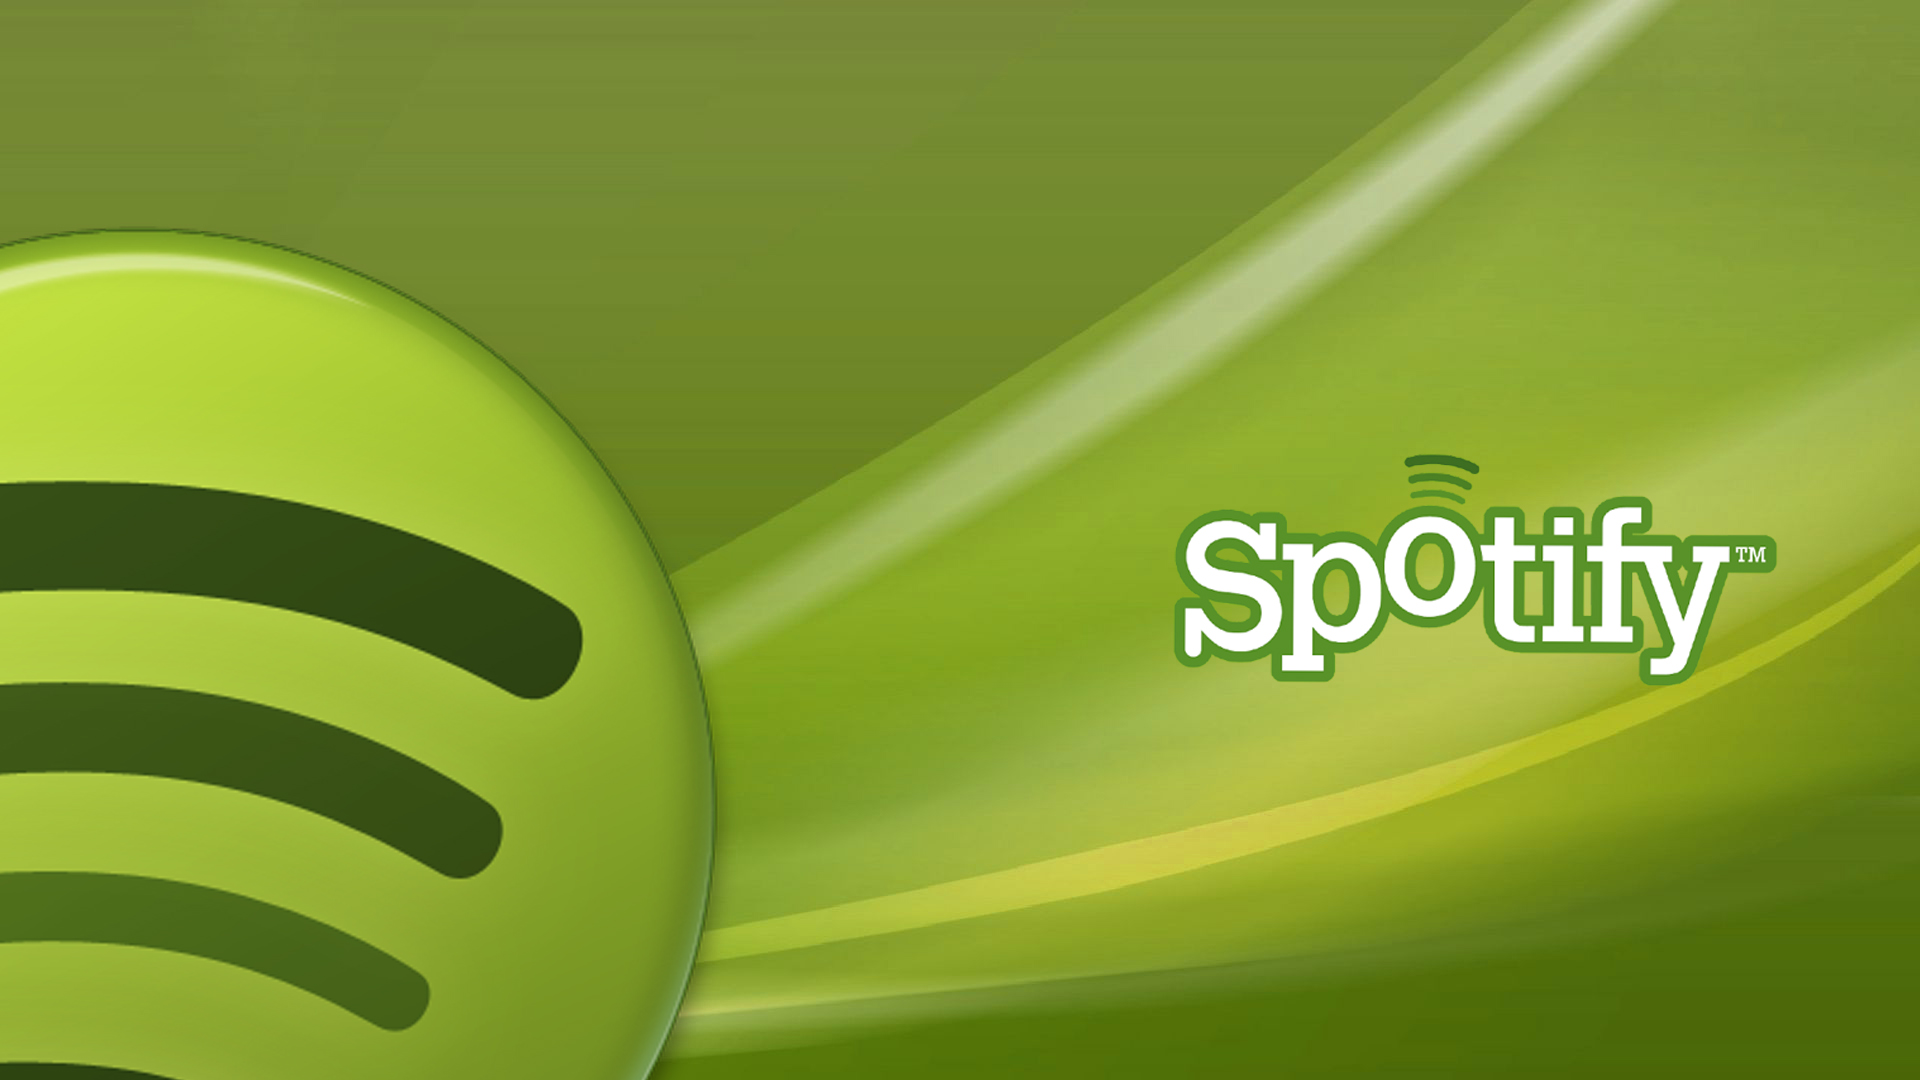 Serviço permite jogar no Playstation e ouvir música no Spotify ao mesmo  tempo